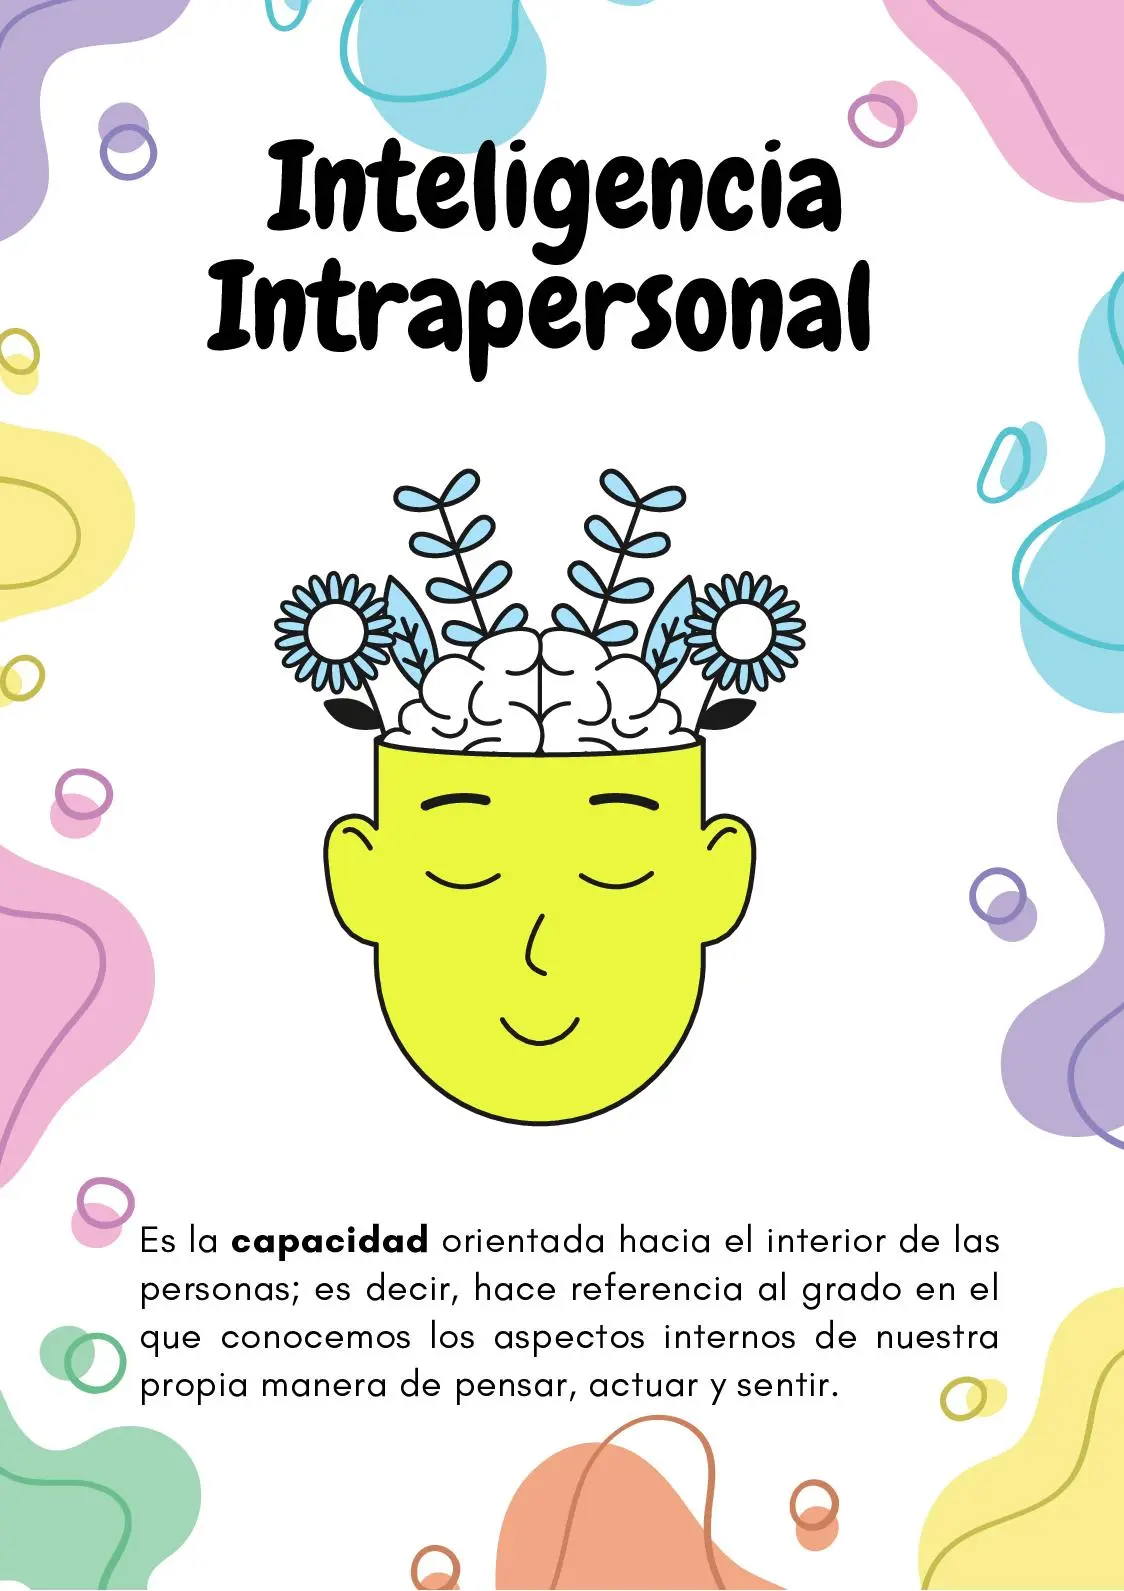 inteligencia intrapersonal ejemplos - Cómo desarrollar la inteligencia intrapersonal ejemplos